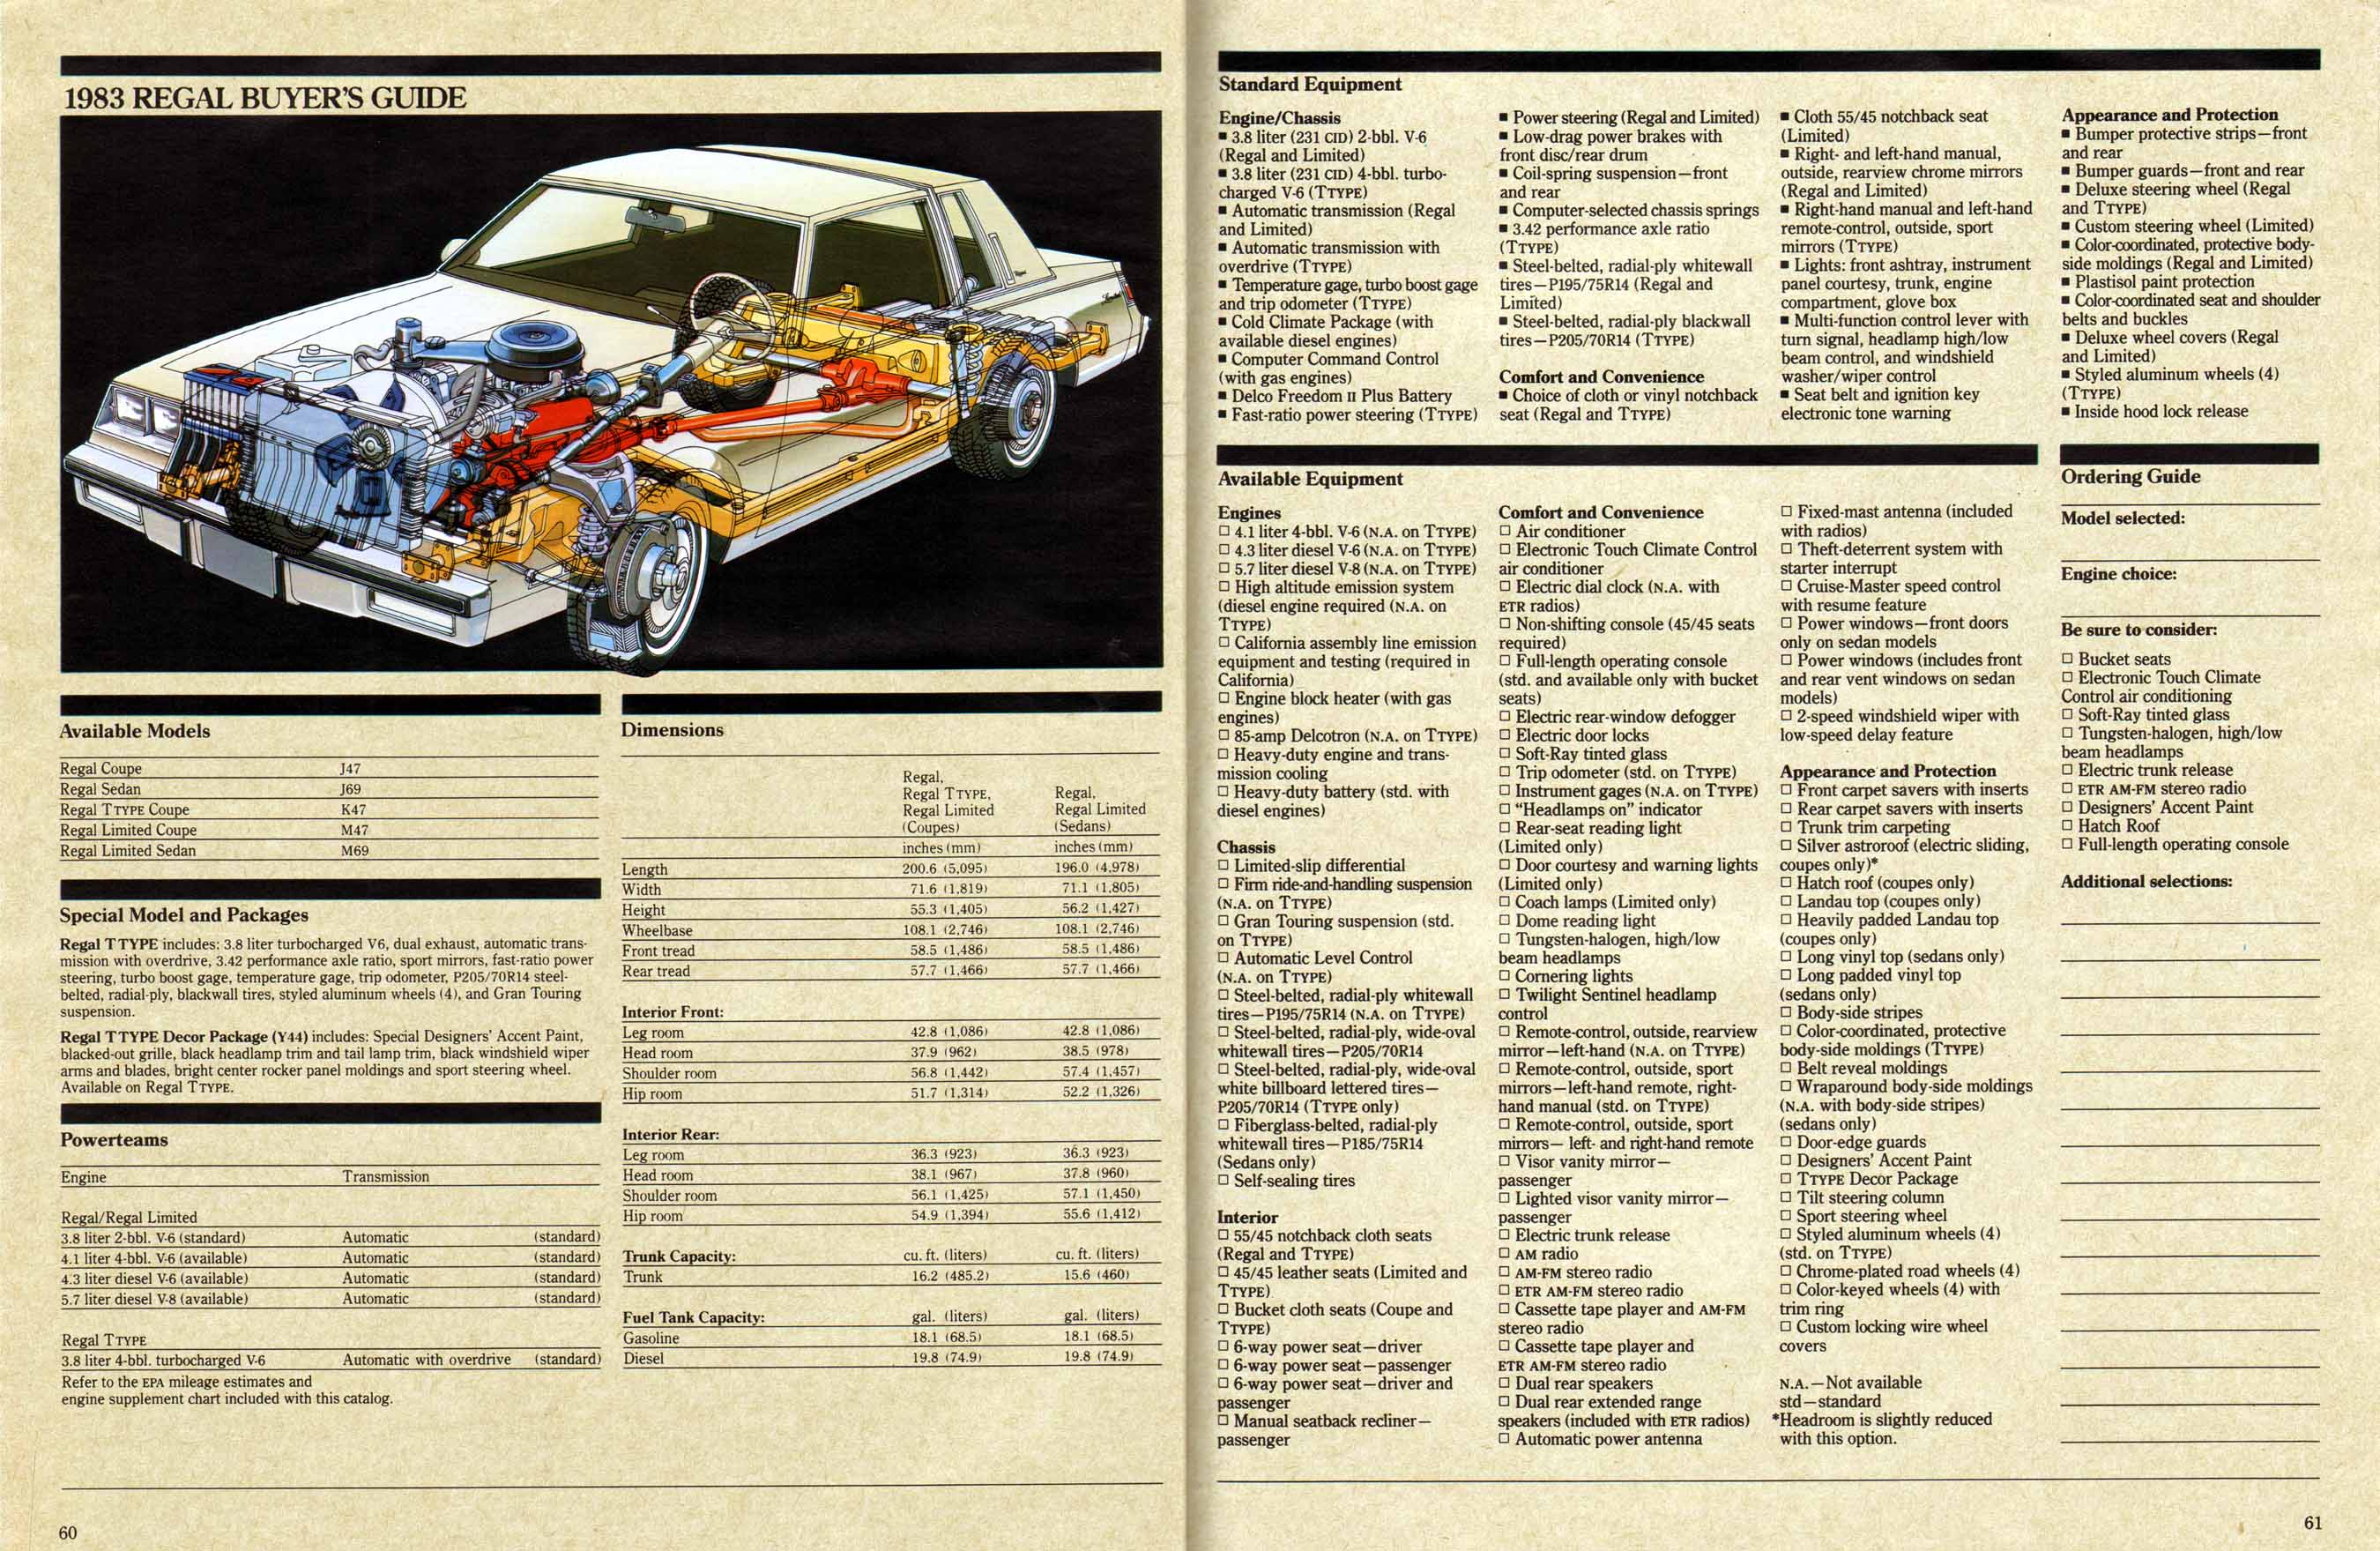 1983 Buick Full Line Prestige-60-61